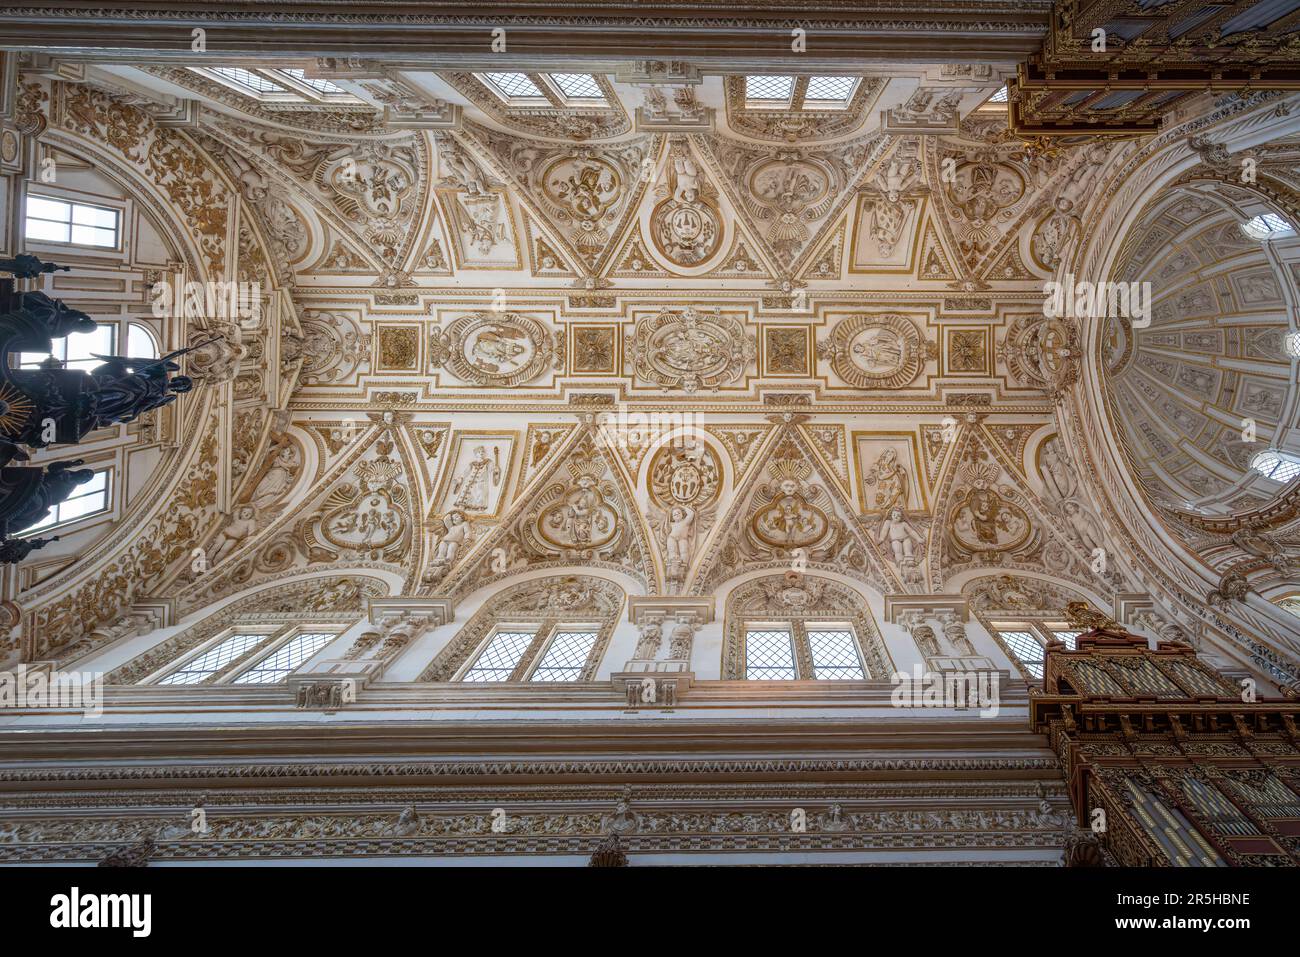 Soffitto alto della zona dell'altare alla moschea-cattedrale di Cordoba - Cordoba, Andalusia, Spagna Foto Stock